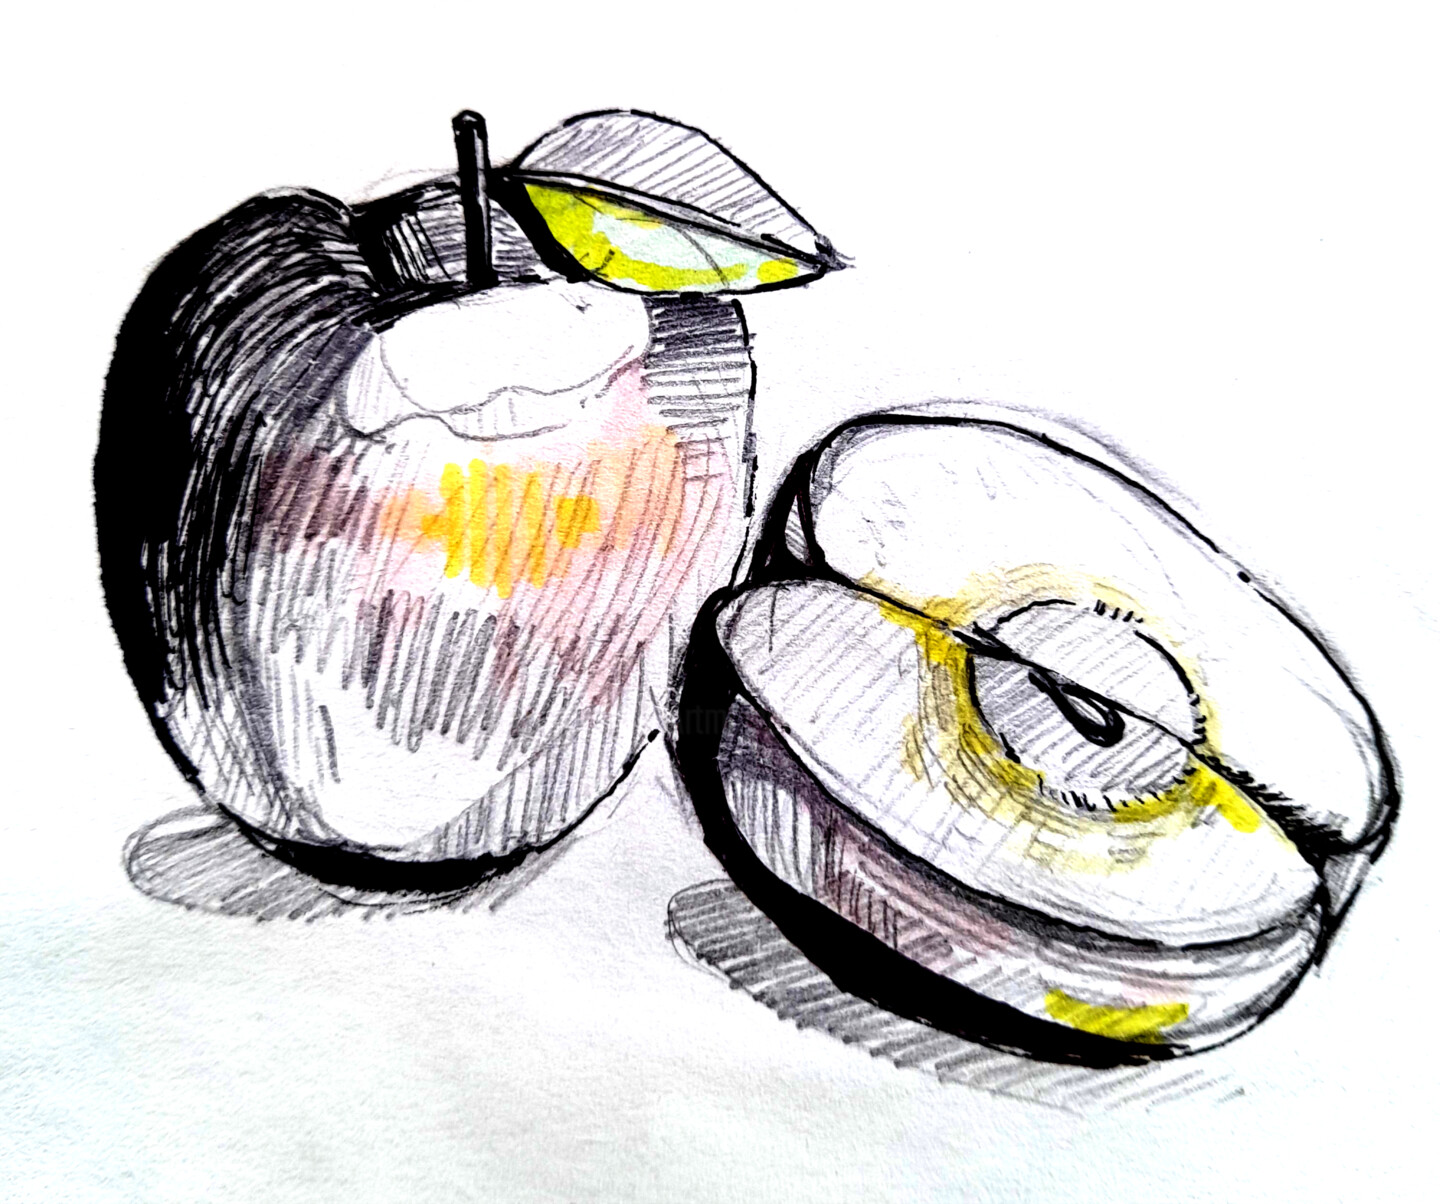 apple slice illustration